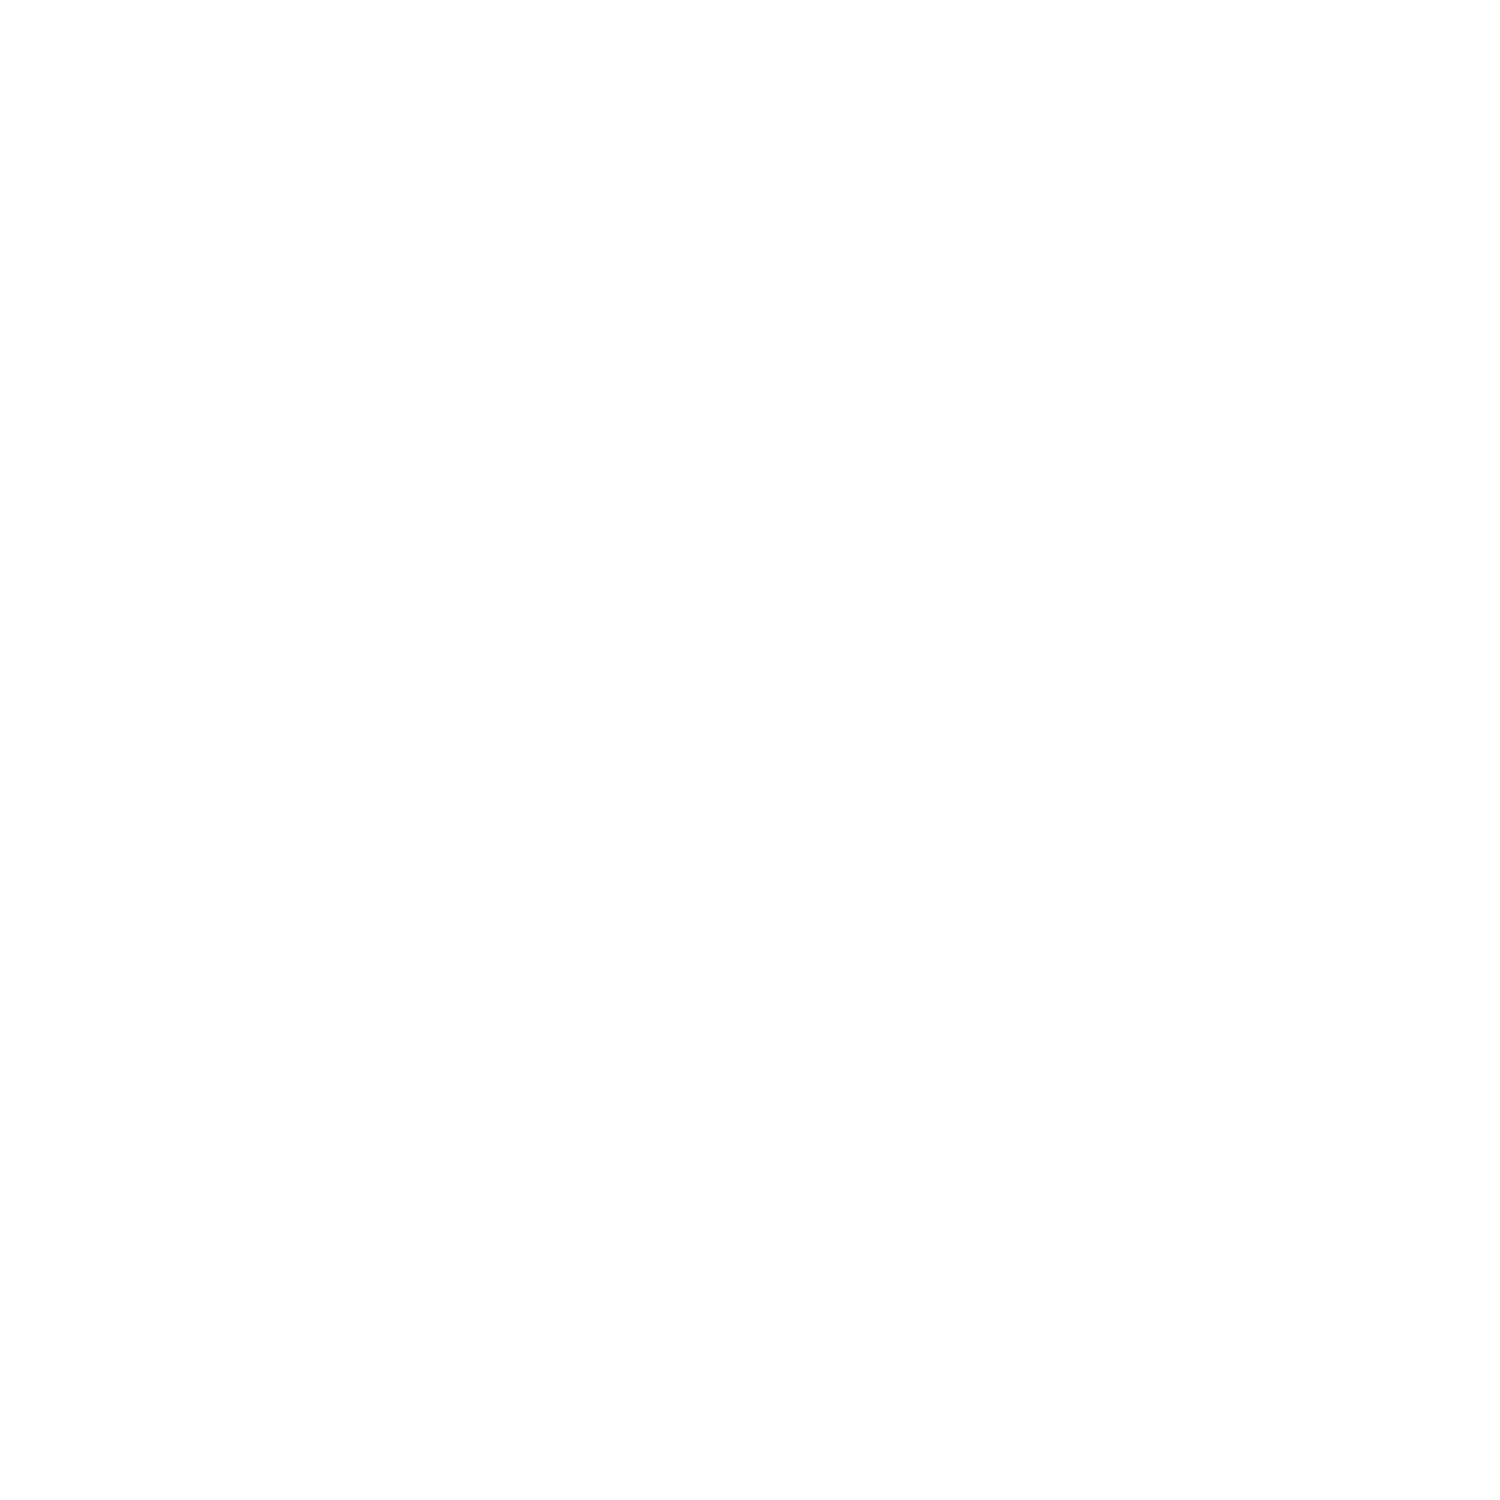 Cats Cove Media